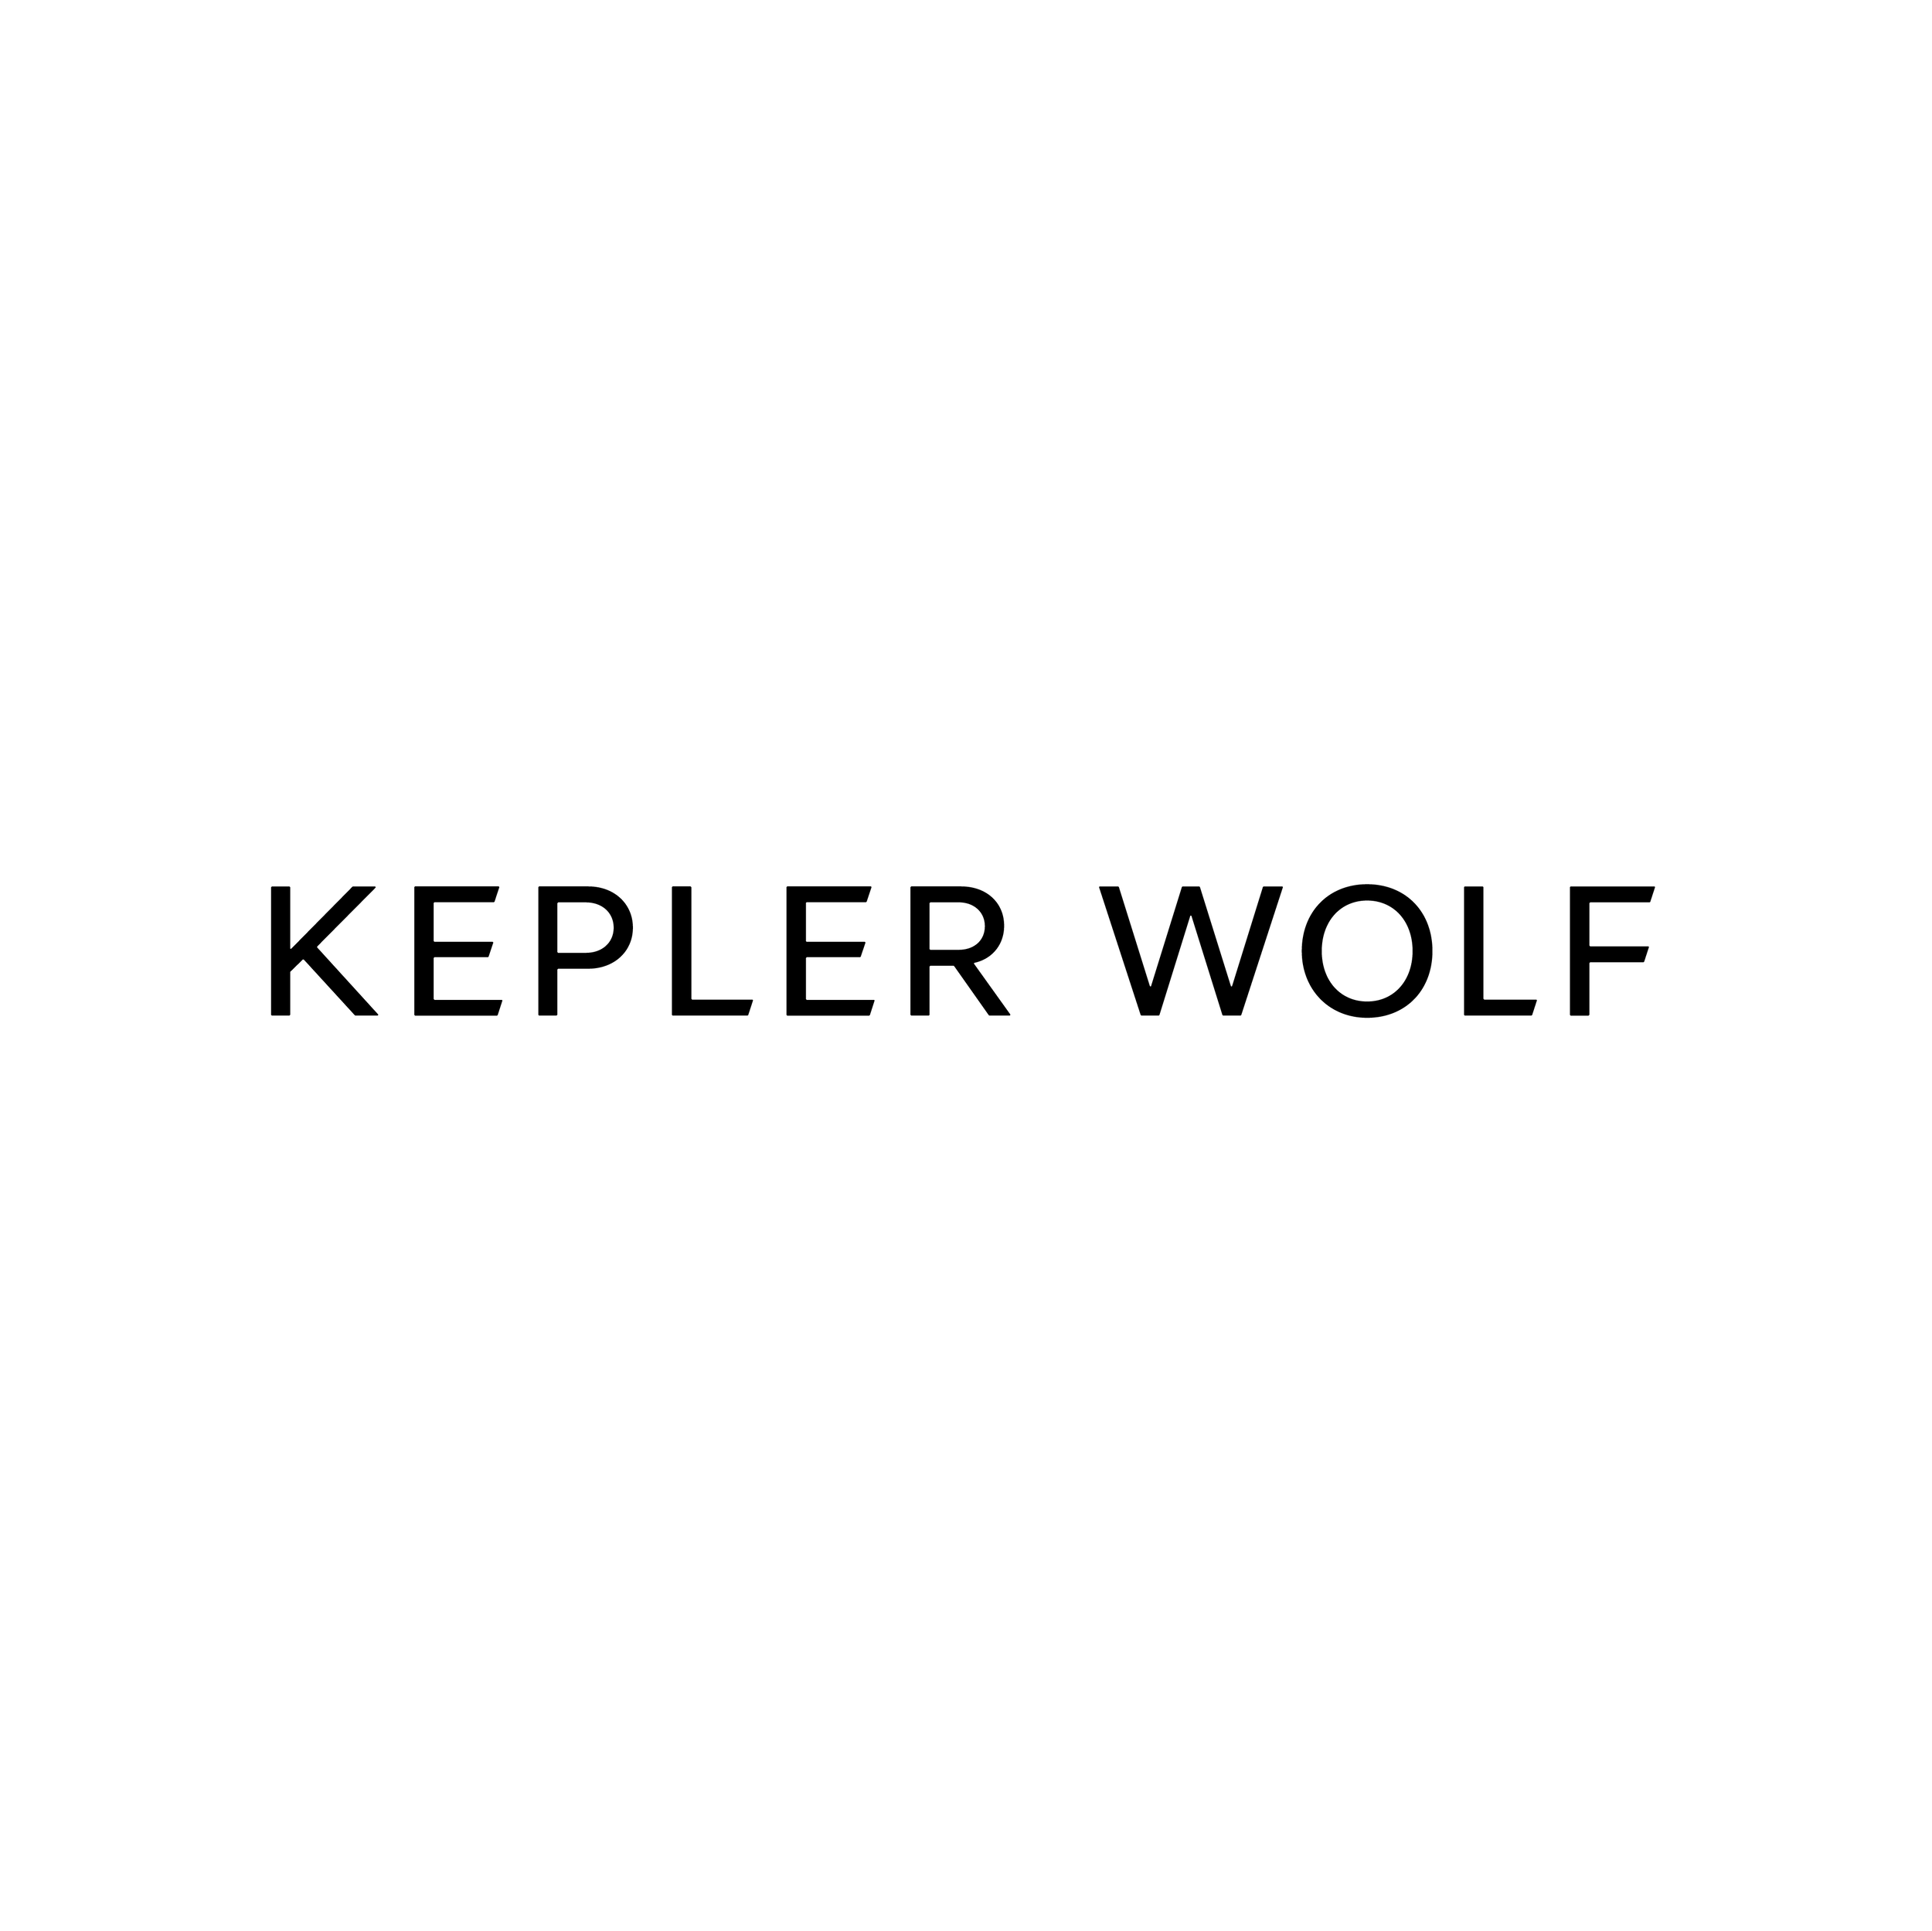 kepler wolf-10.png